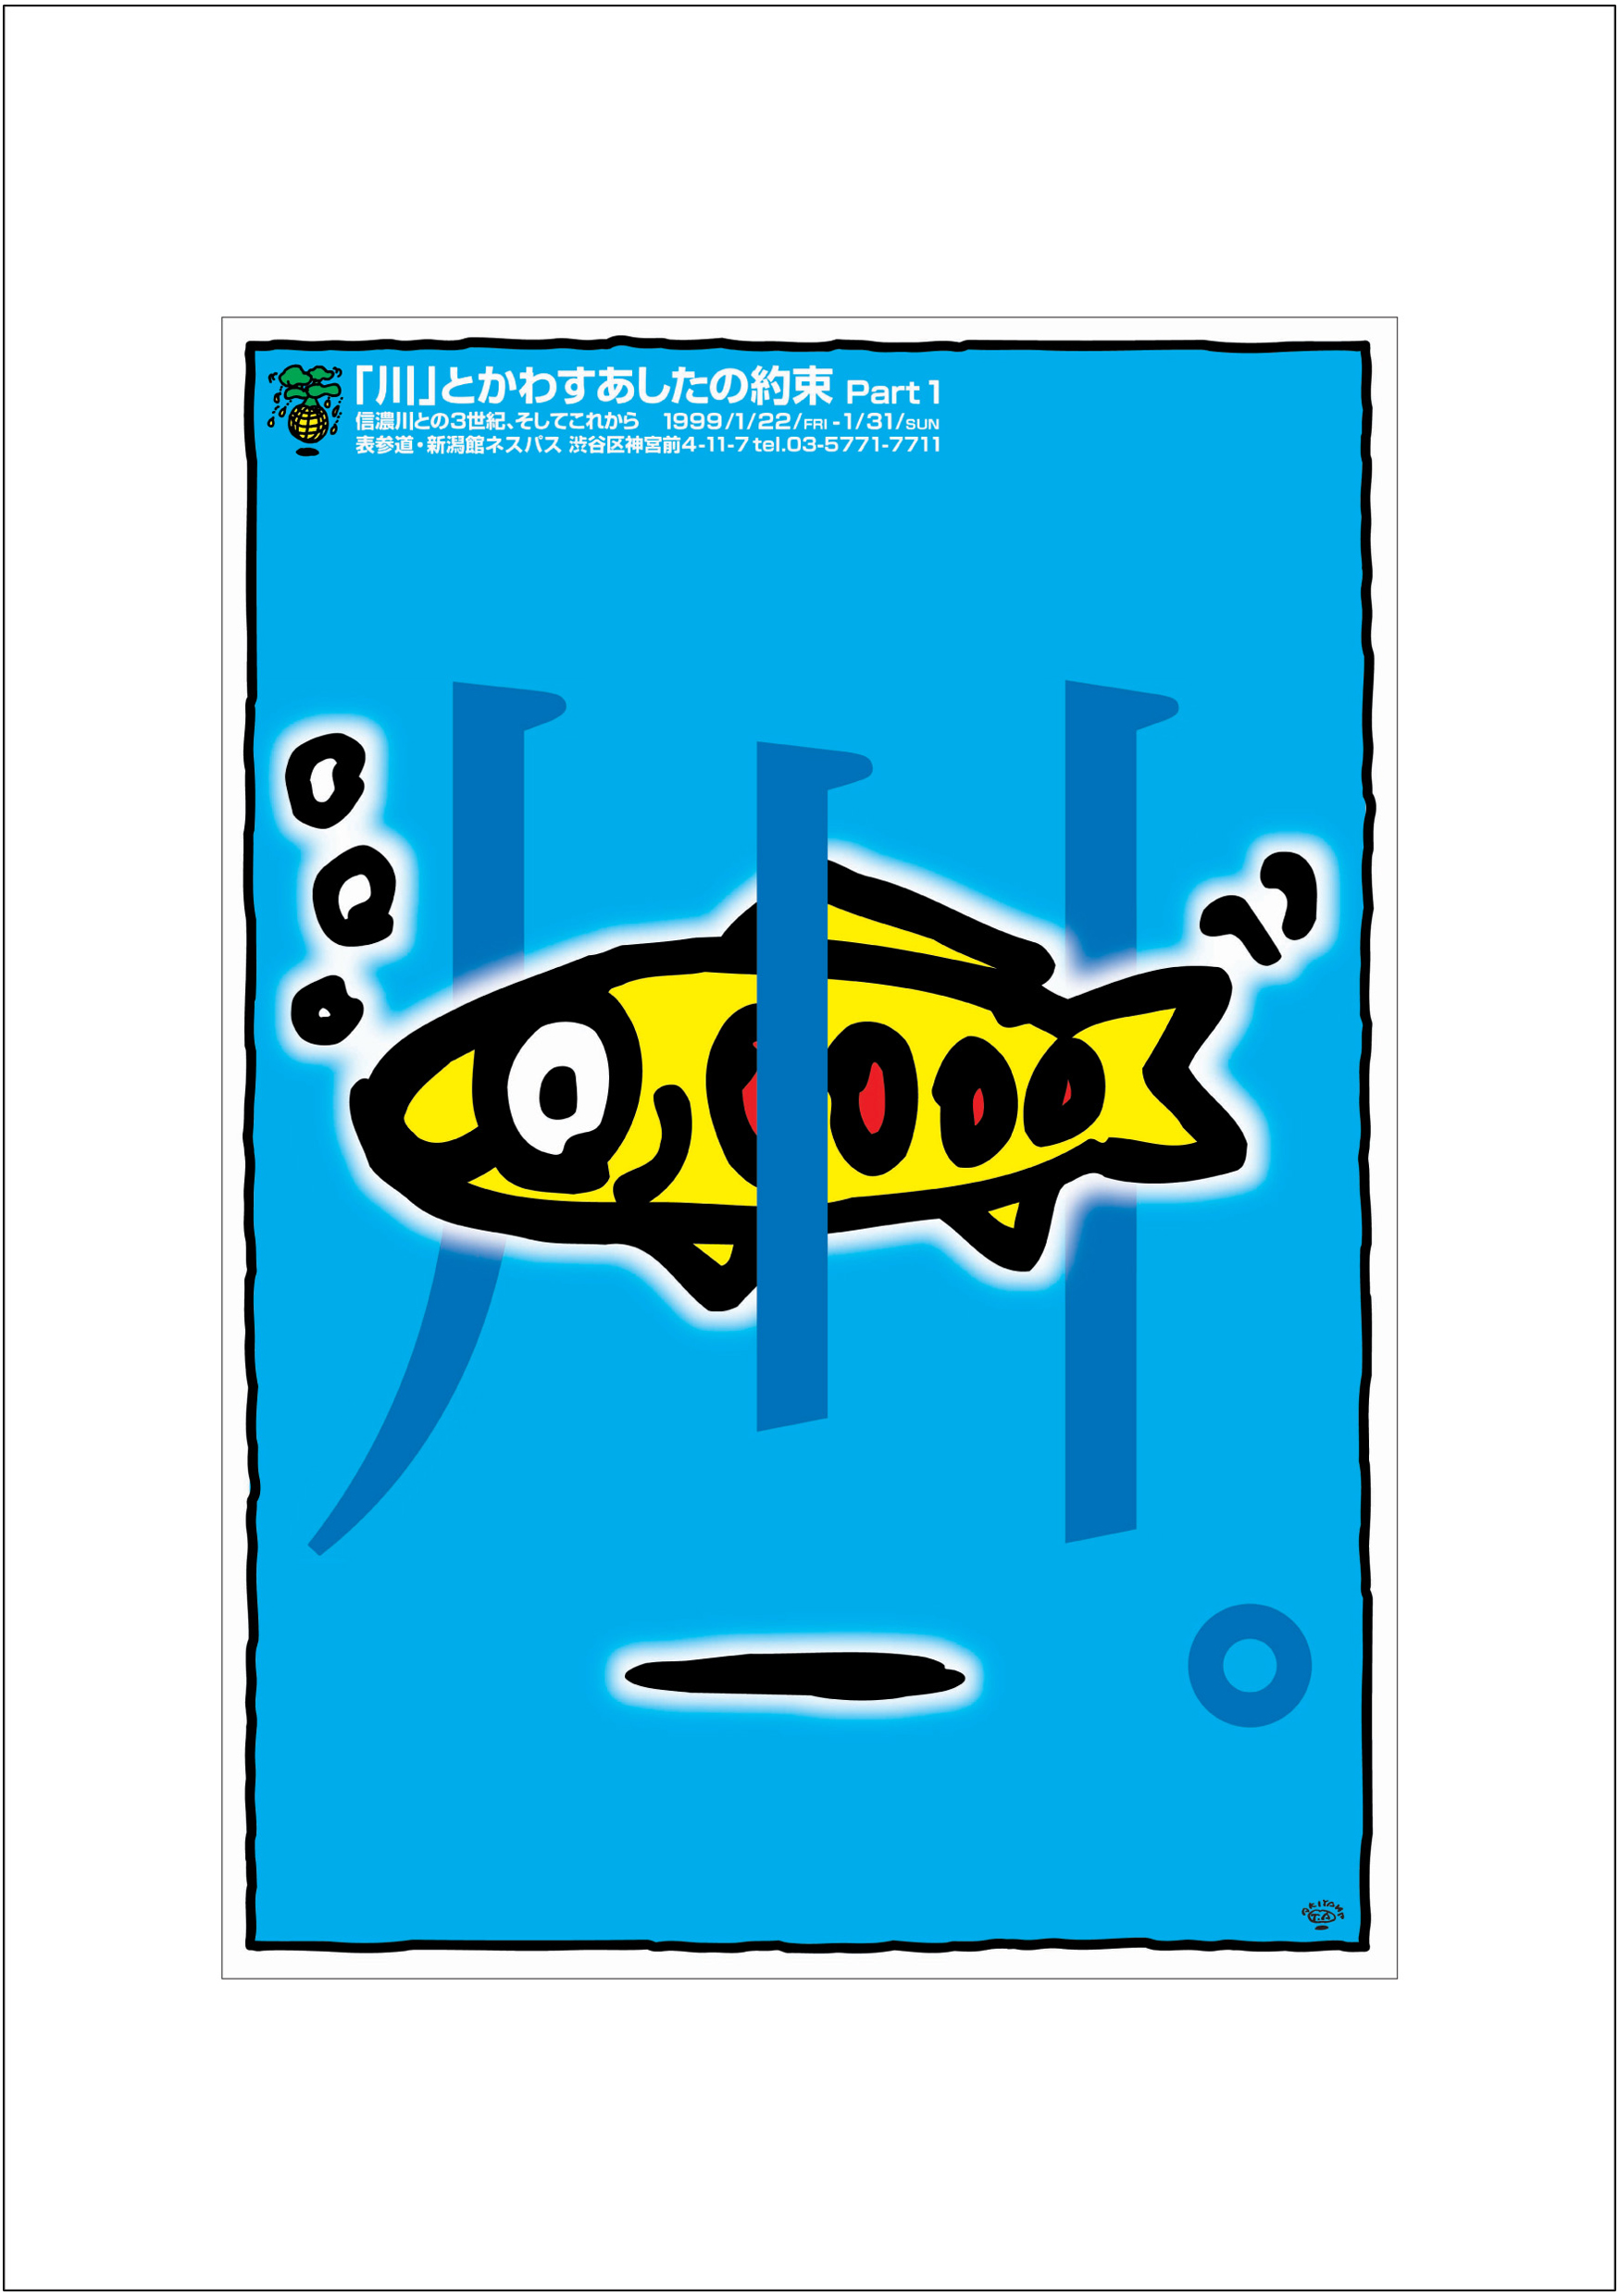 ポスターアーティスト秋山孝が1998年に制作したアートカード「アートカード ポスター 1998 04」